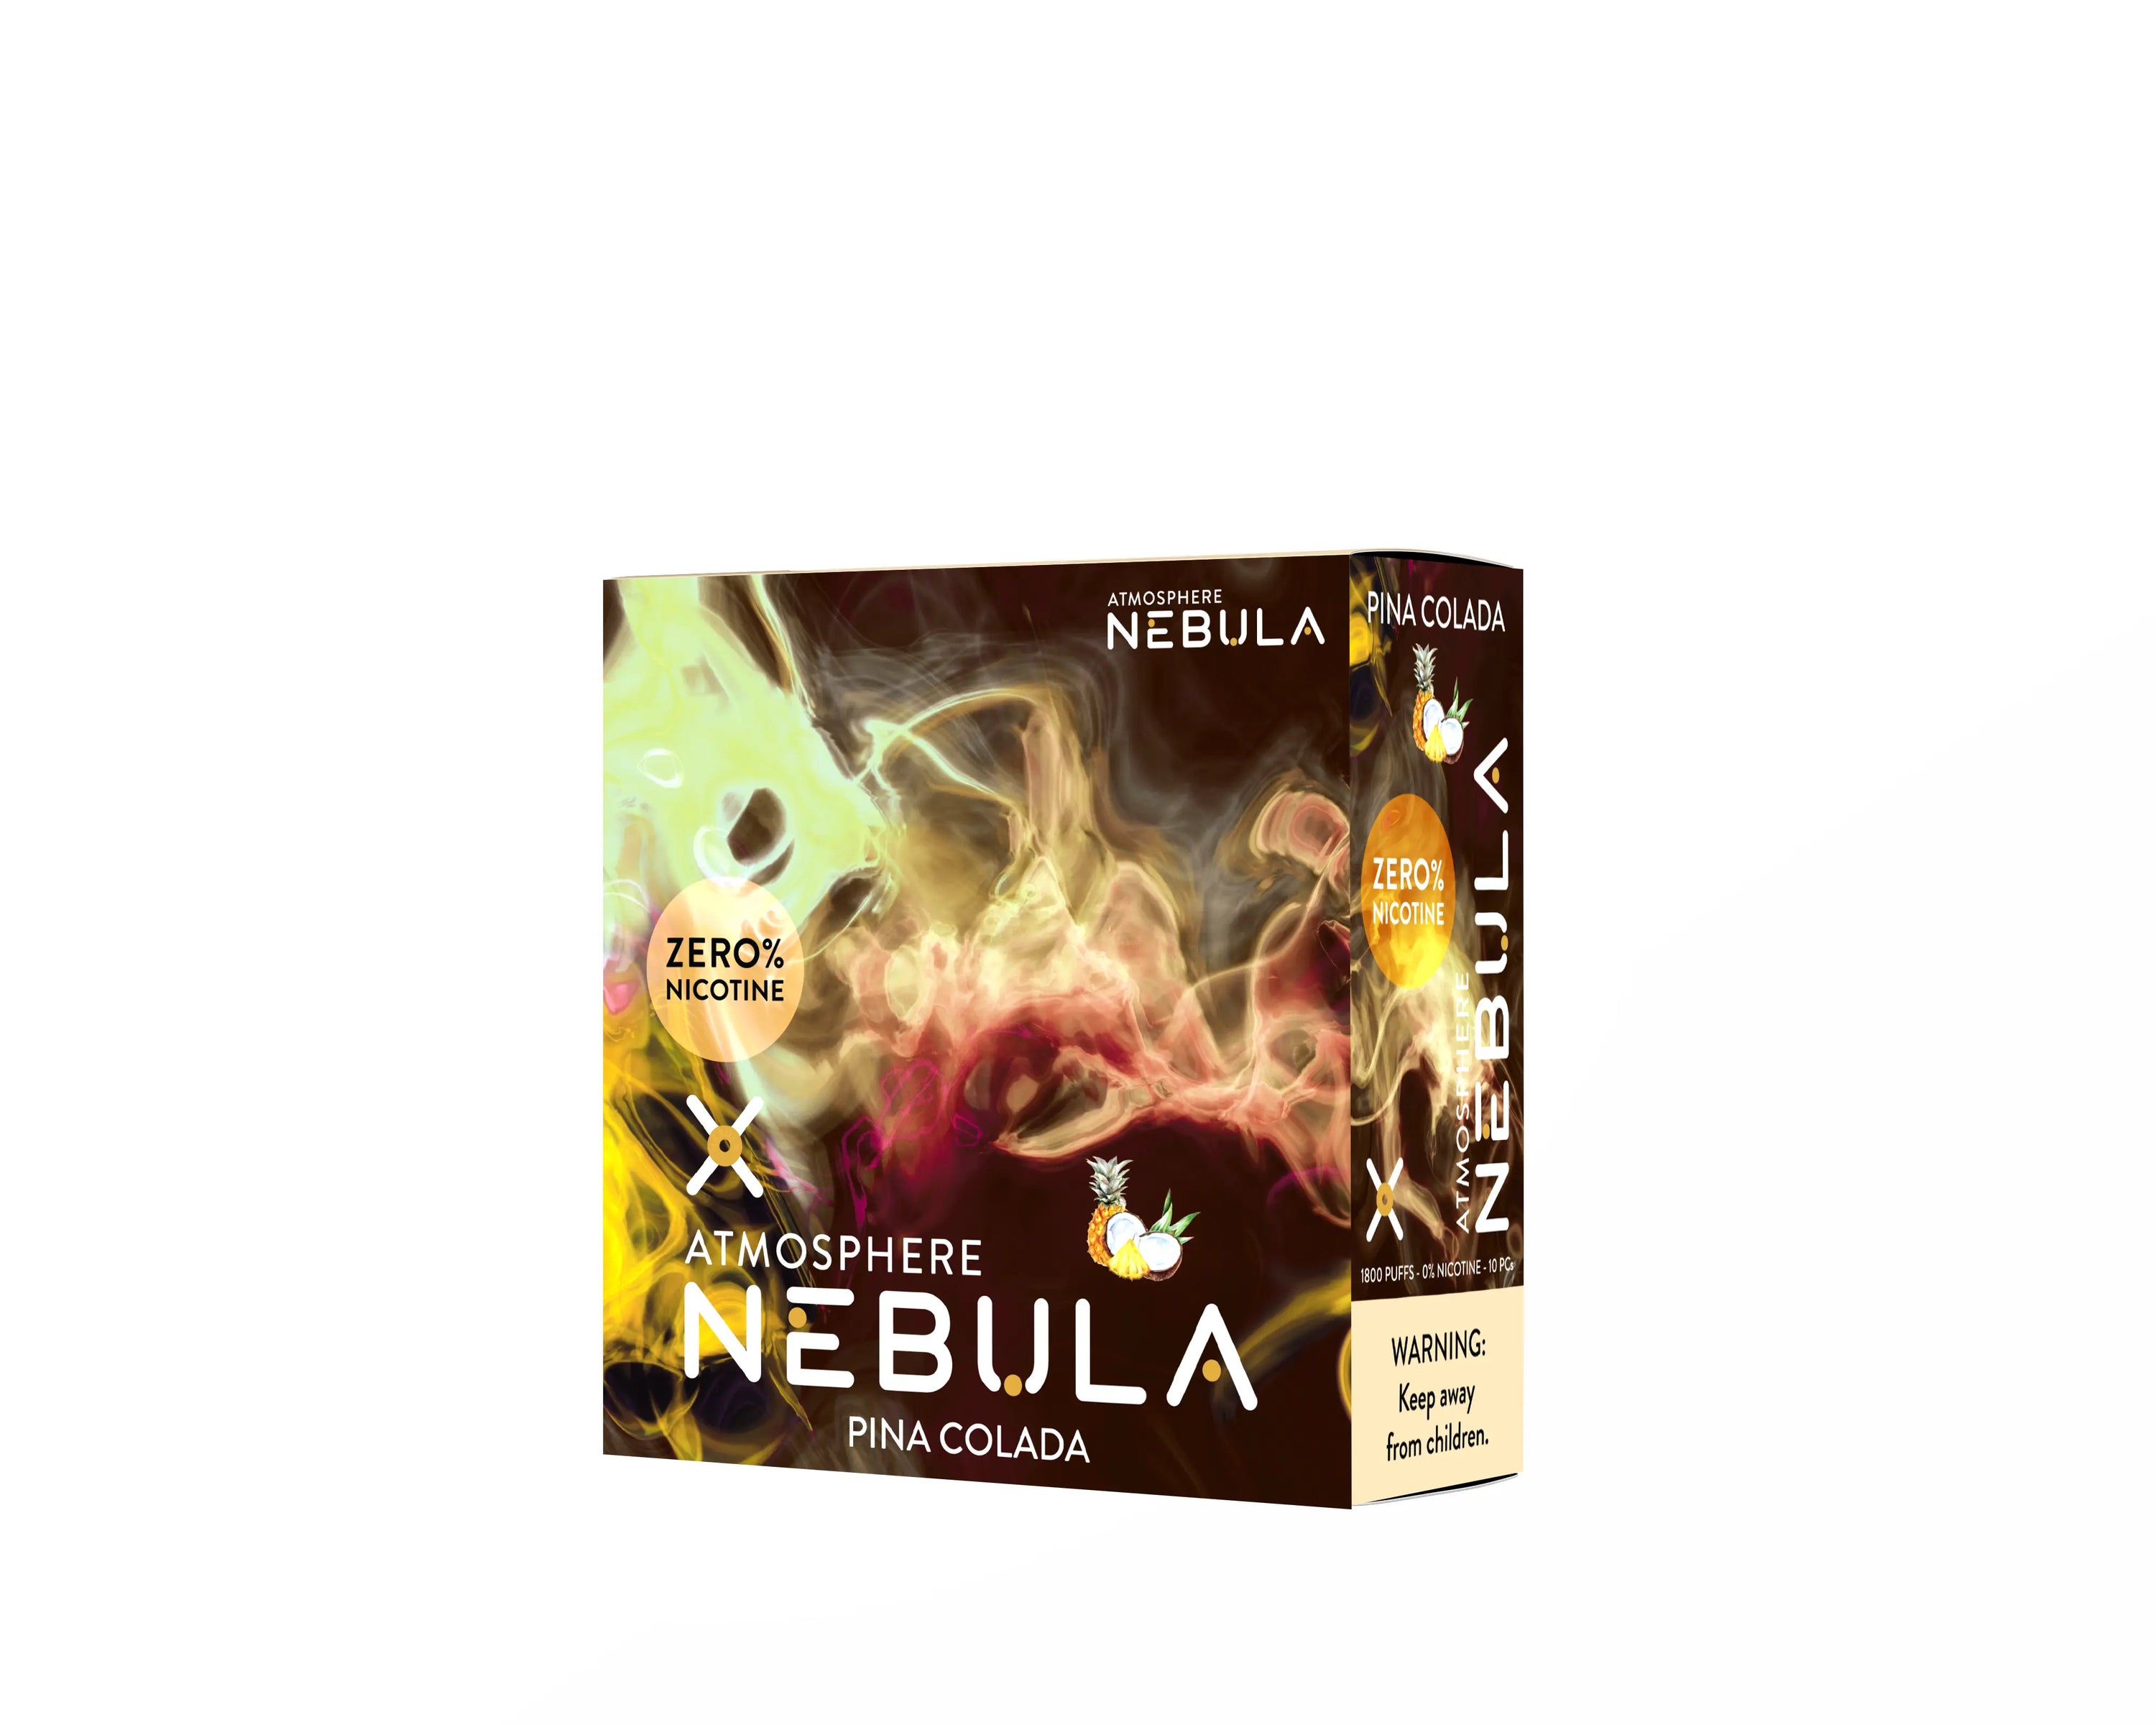 Nebula Atmosphere 0% 1800 Puffs - Pina Colada - B2B Nebula